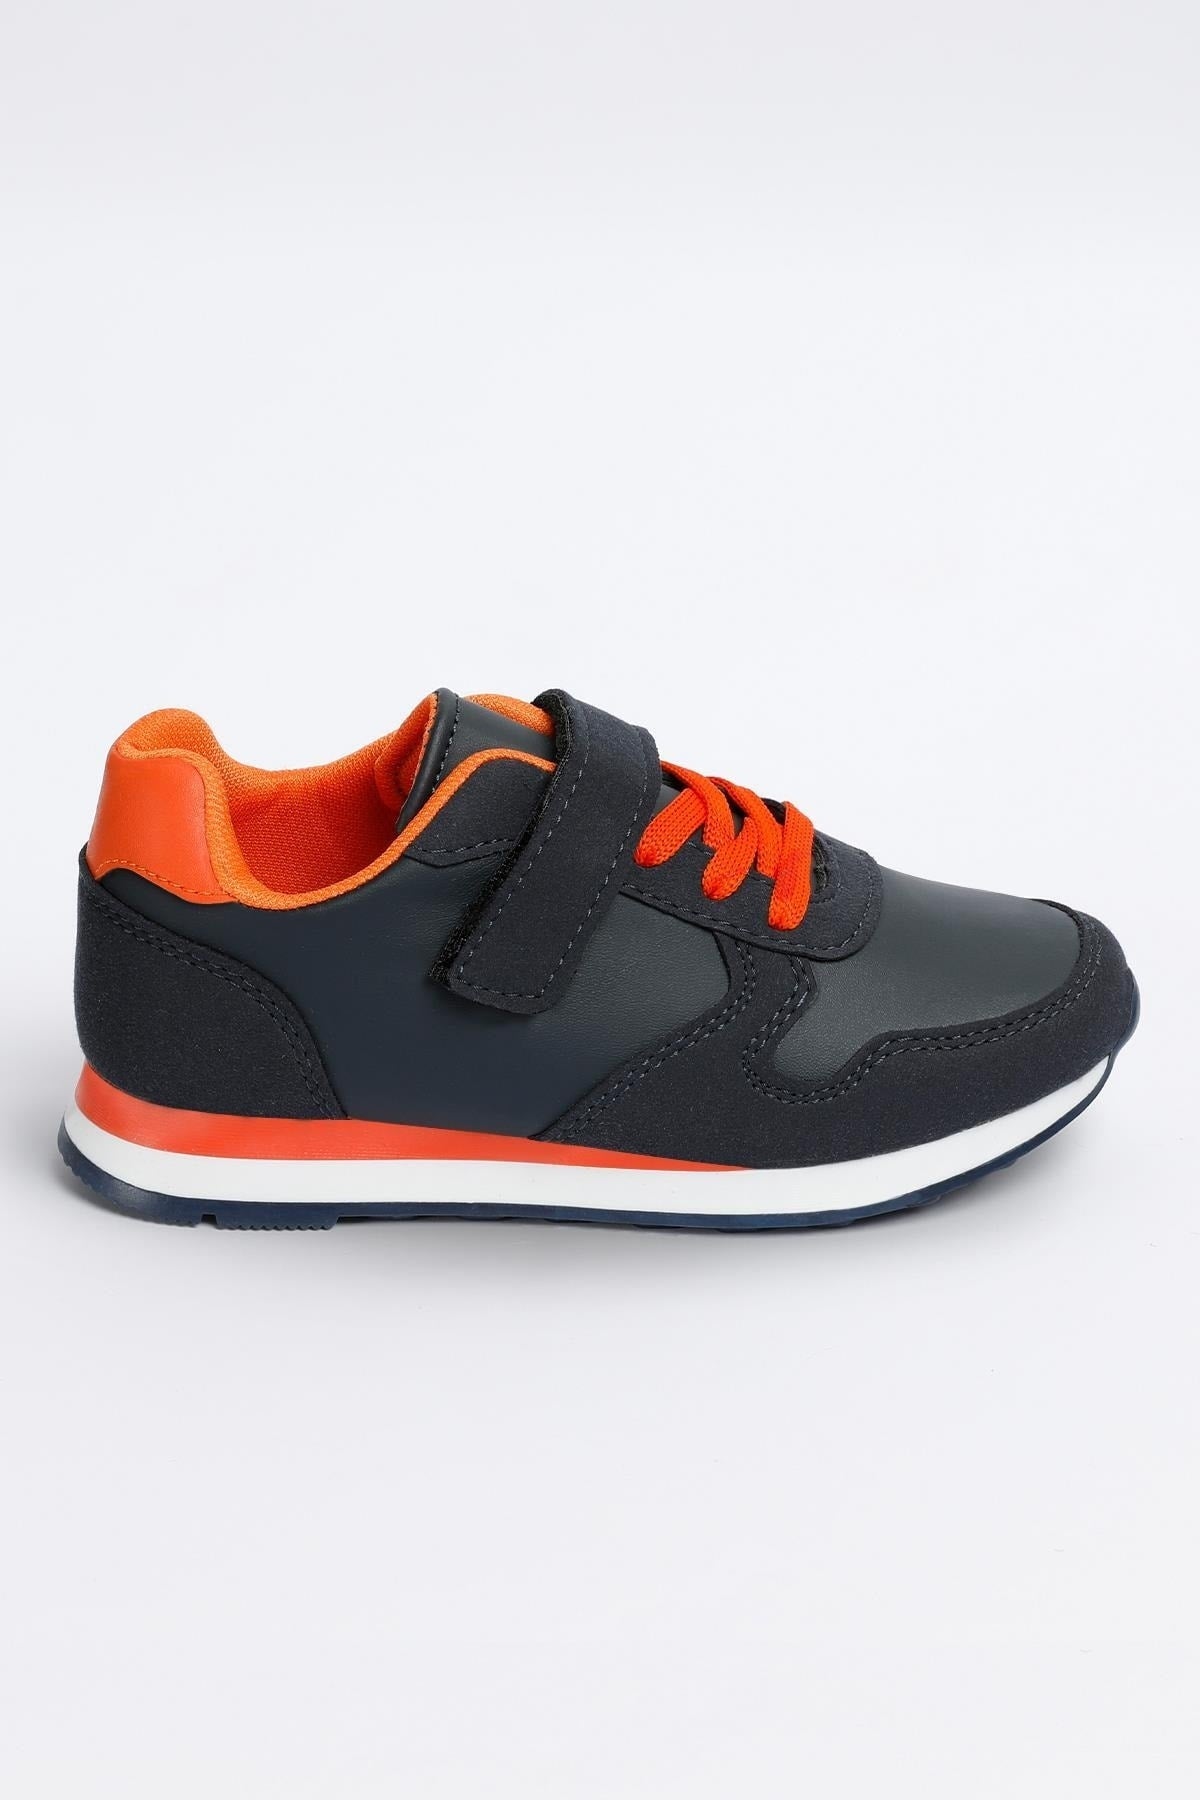 - Vega Model Navy Blue - Orange Unisex Kids Sport Sneaker Shoes